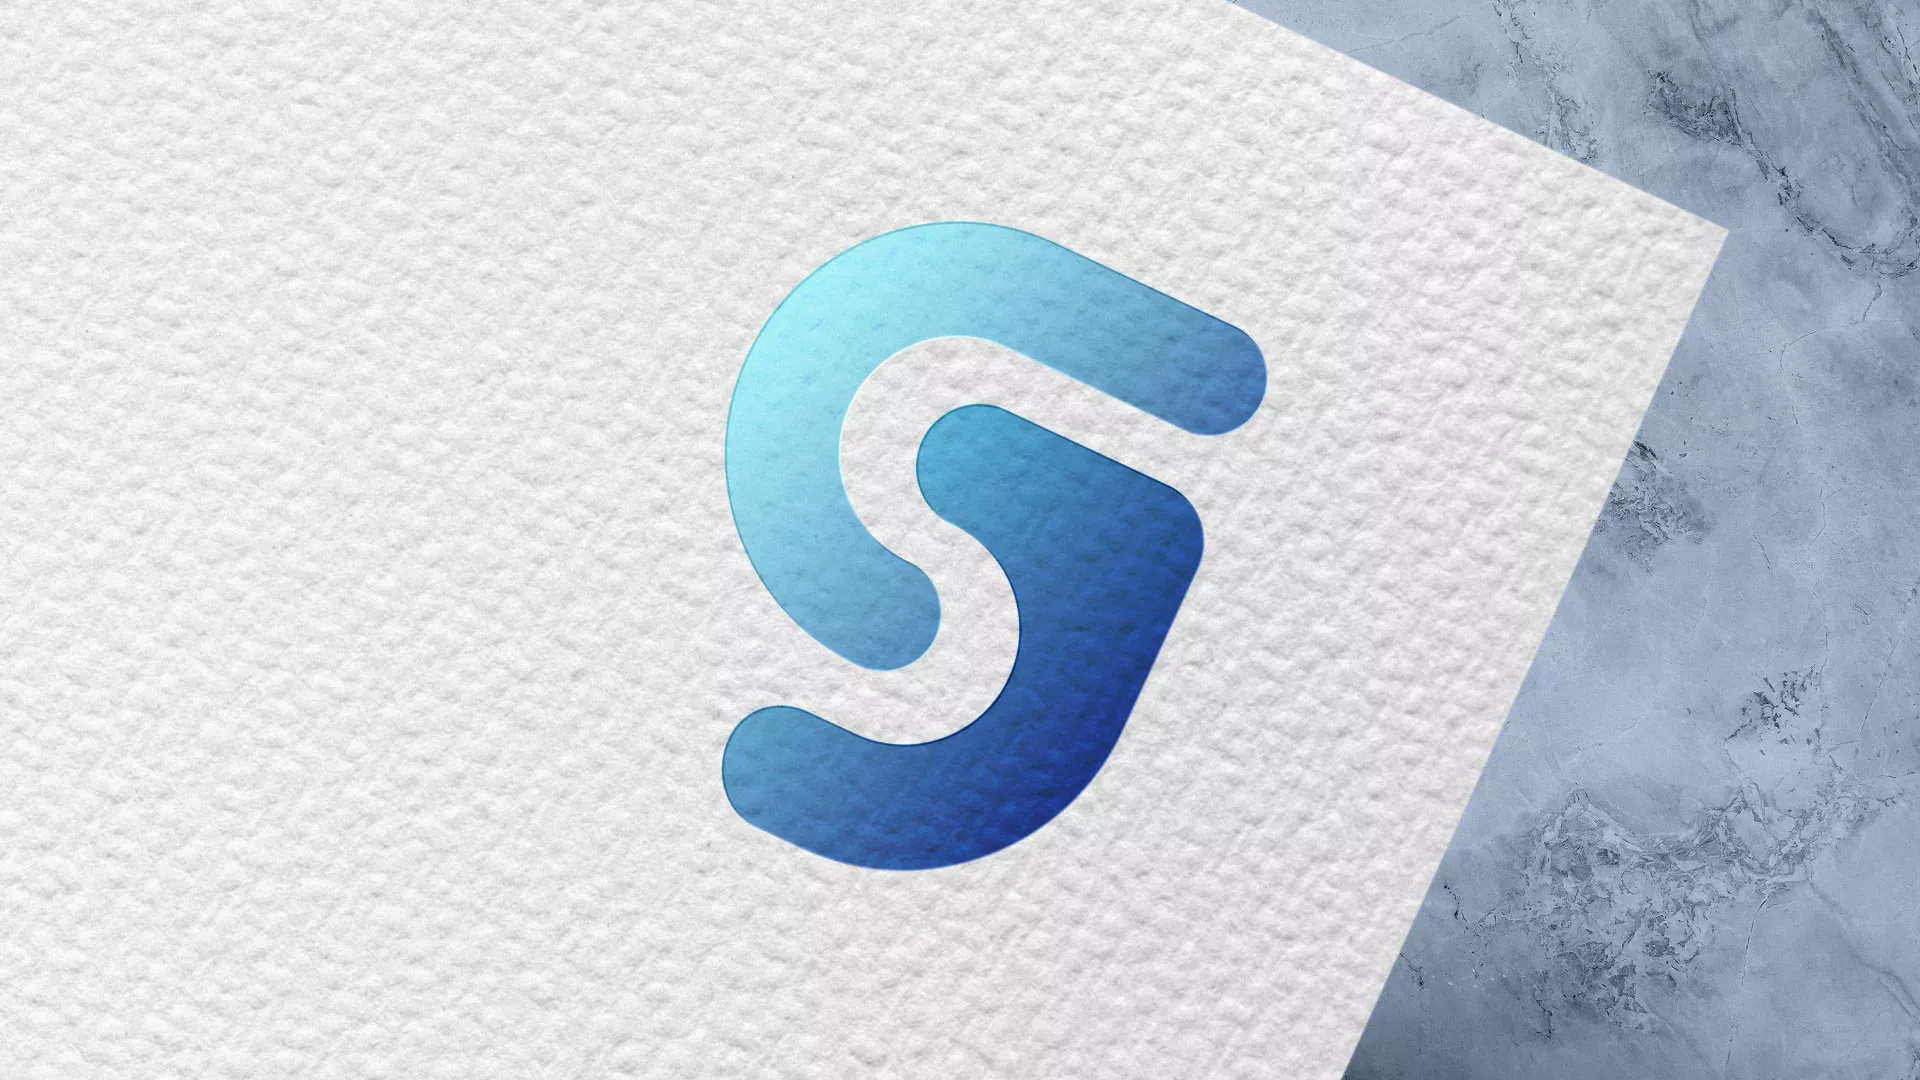 Разработка логотипа газовой компании «Сервис газ» в Шахунье